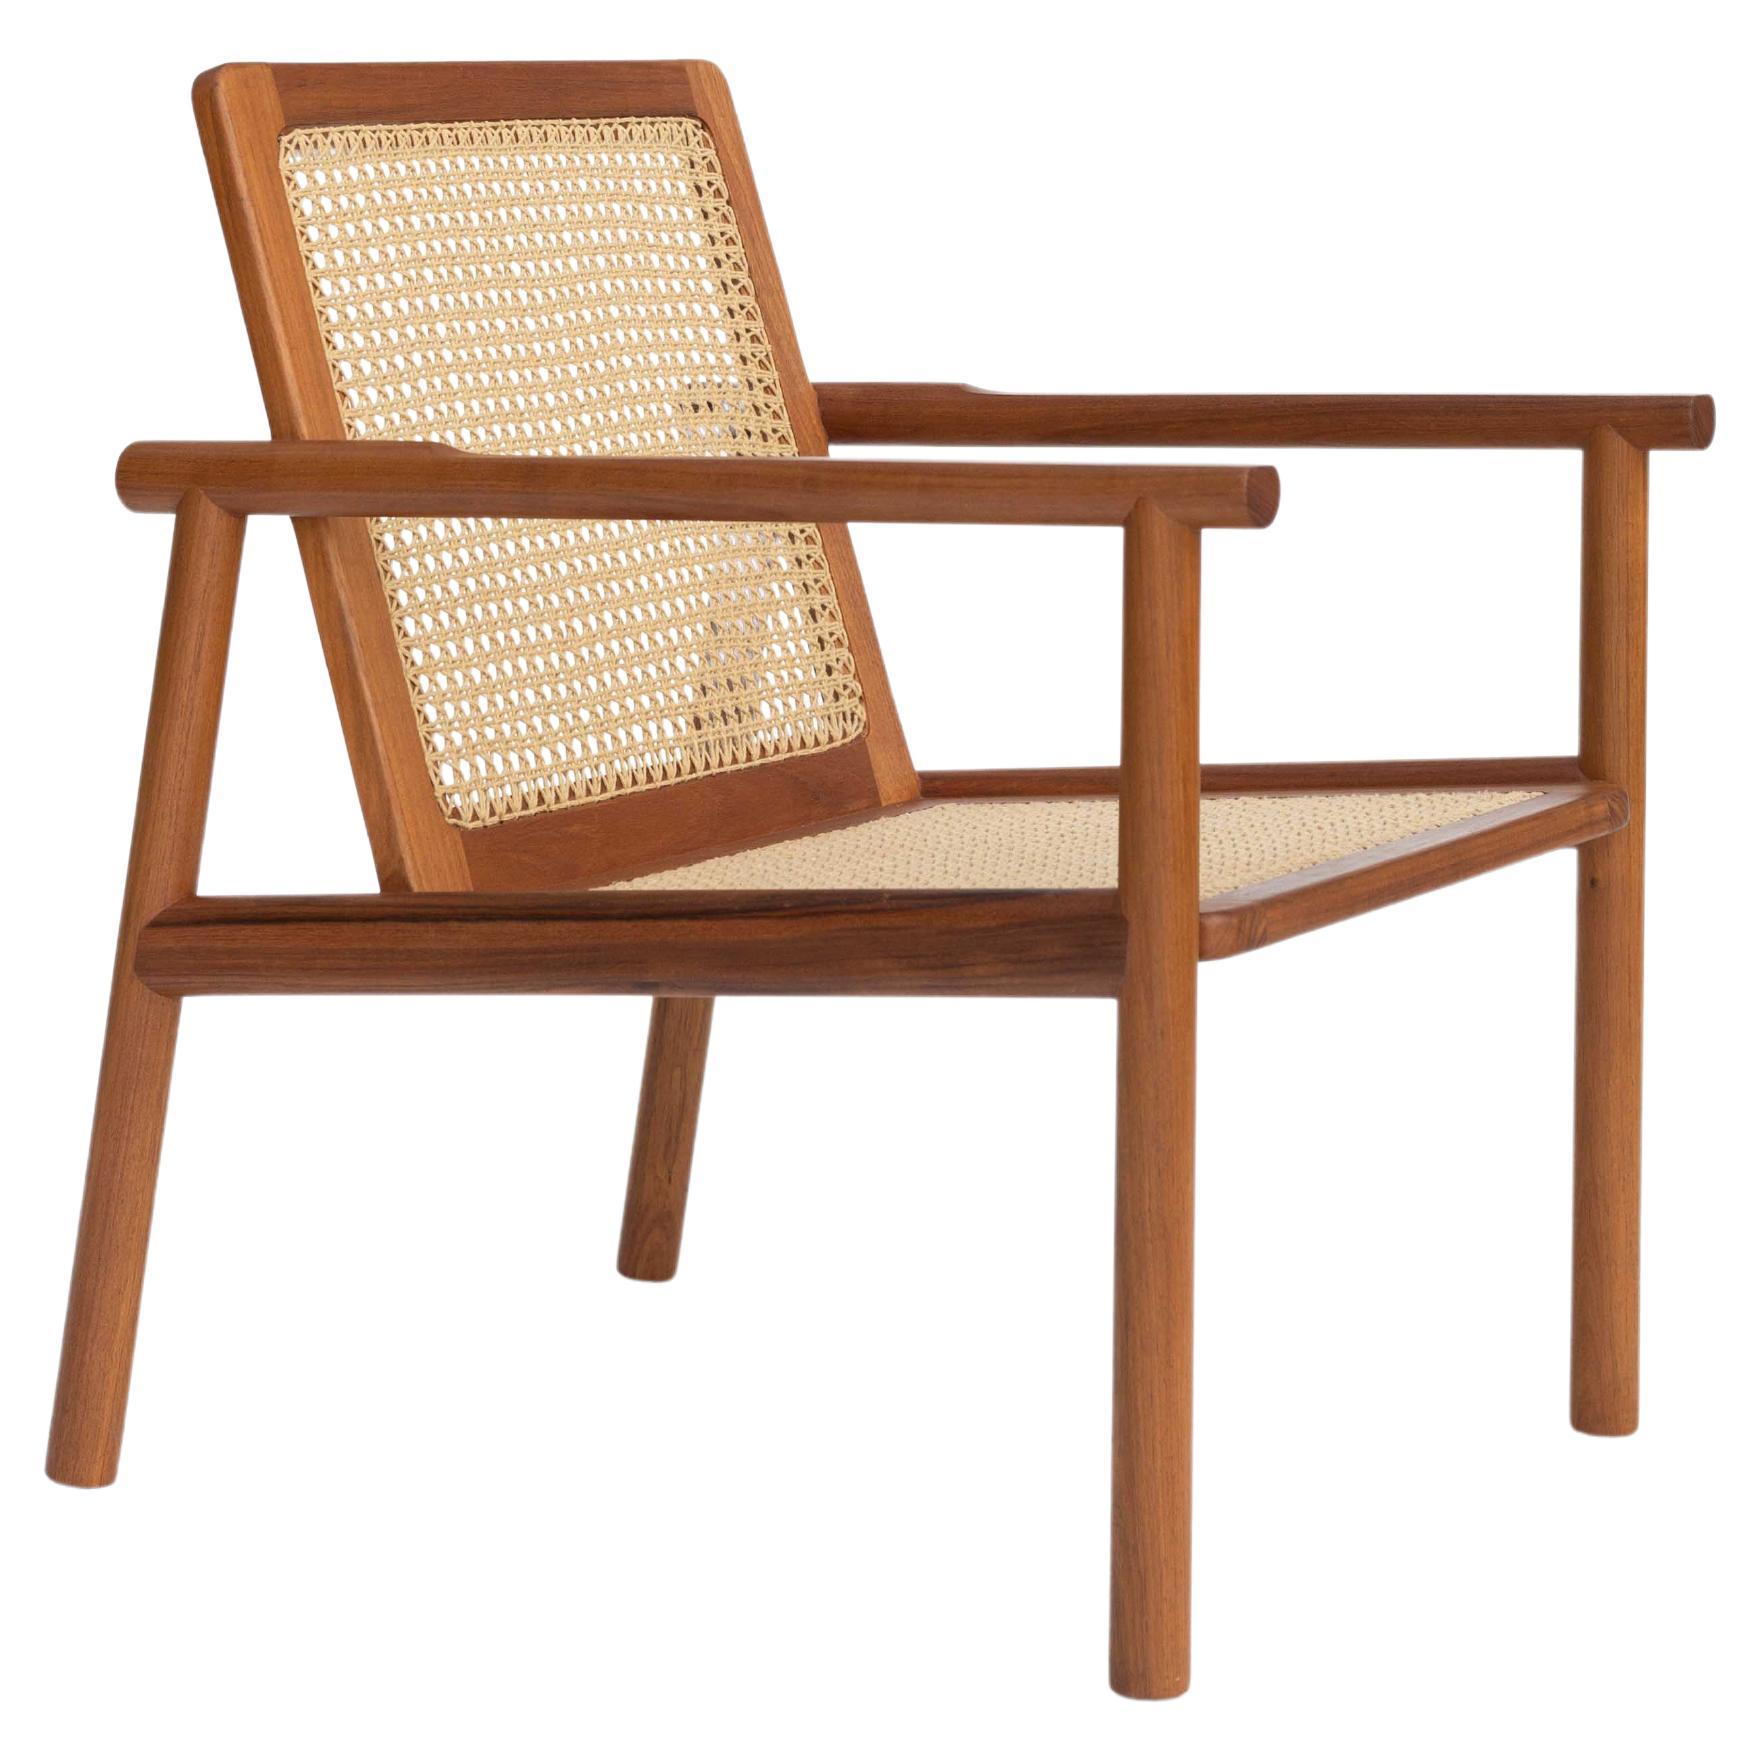 Handgeflochtener Contemporary-Sessel aus karibischem Nussbaum